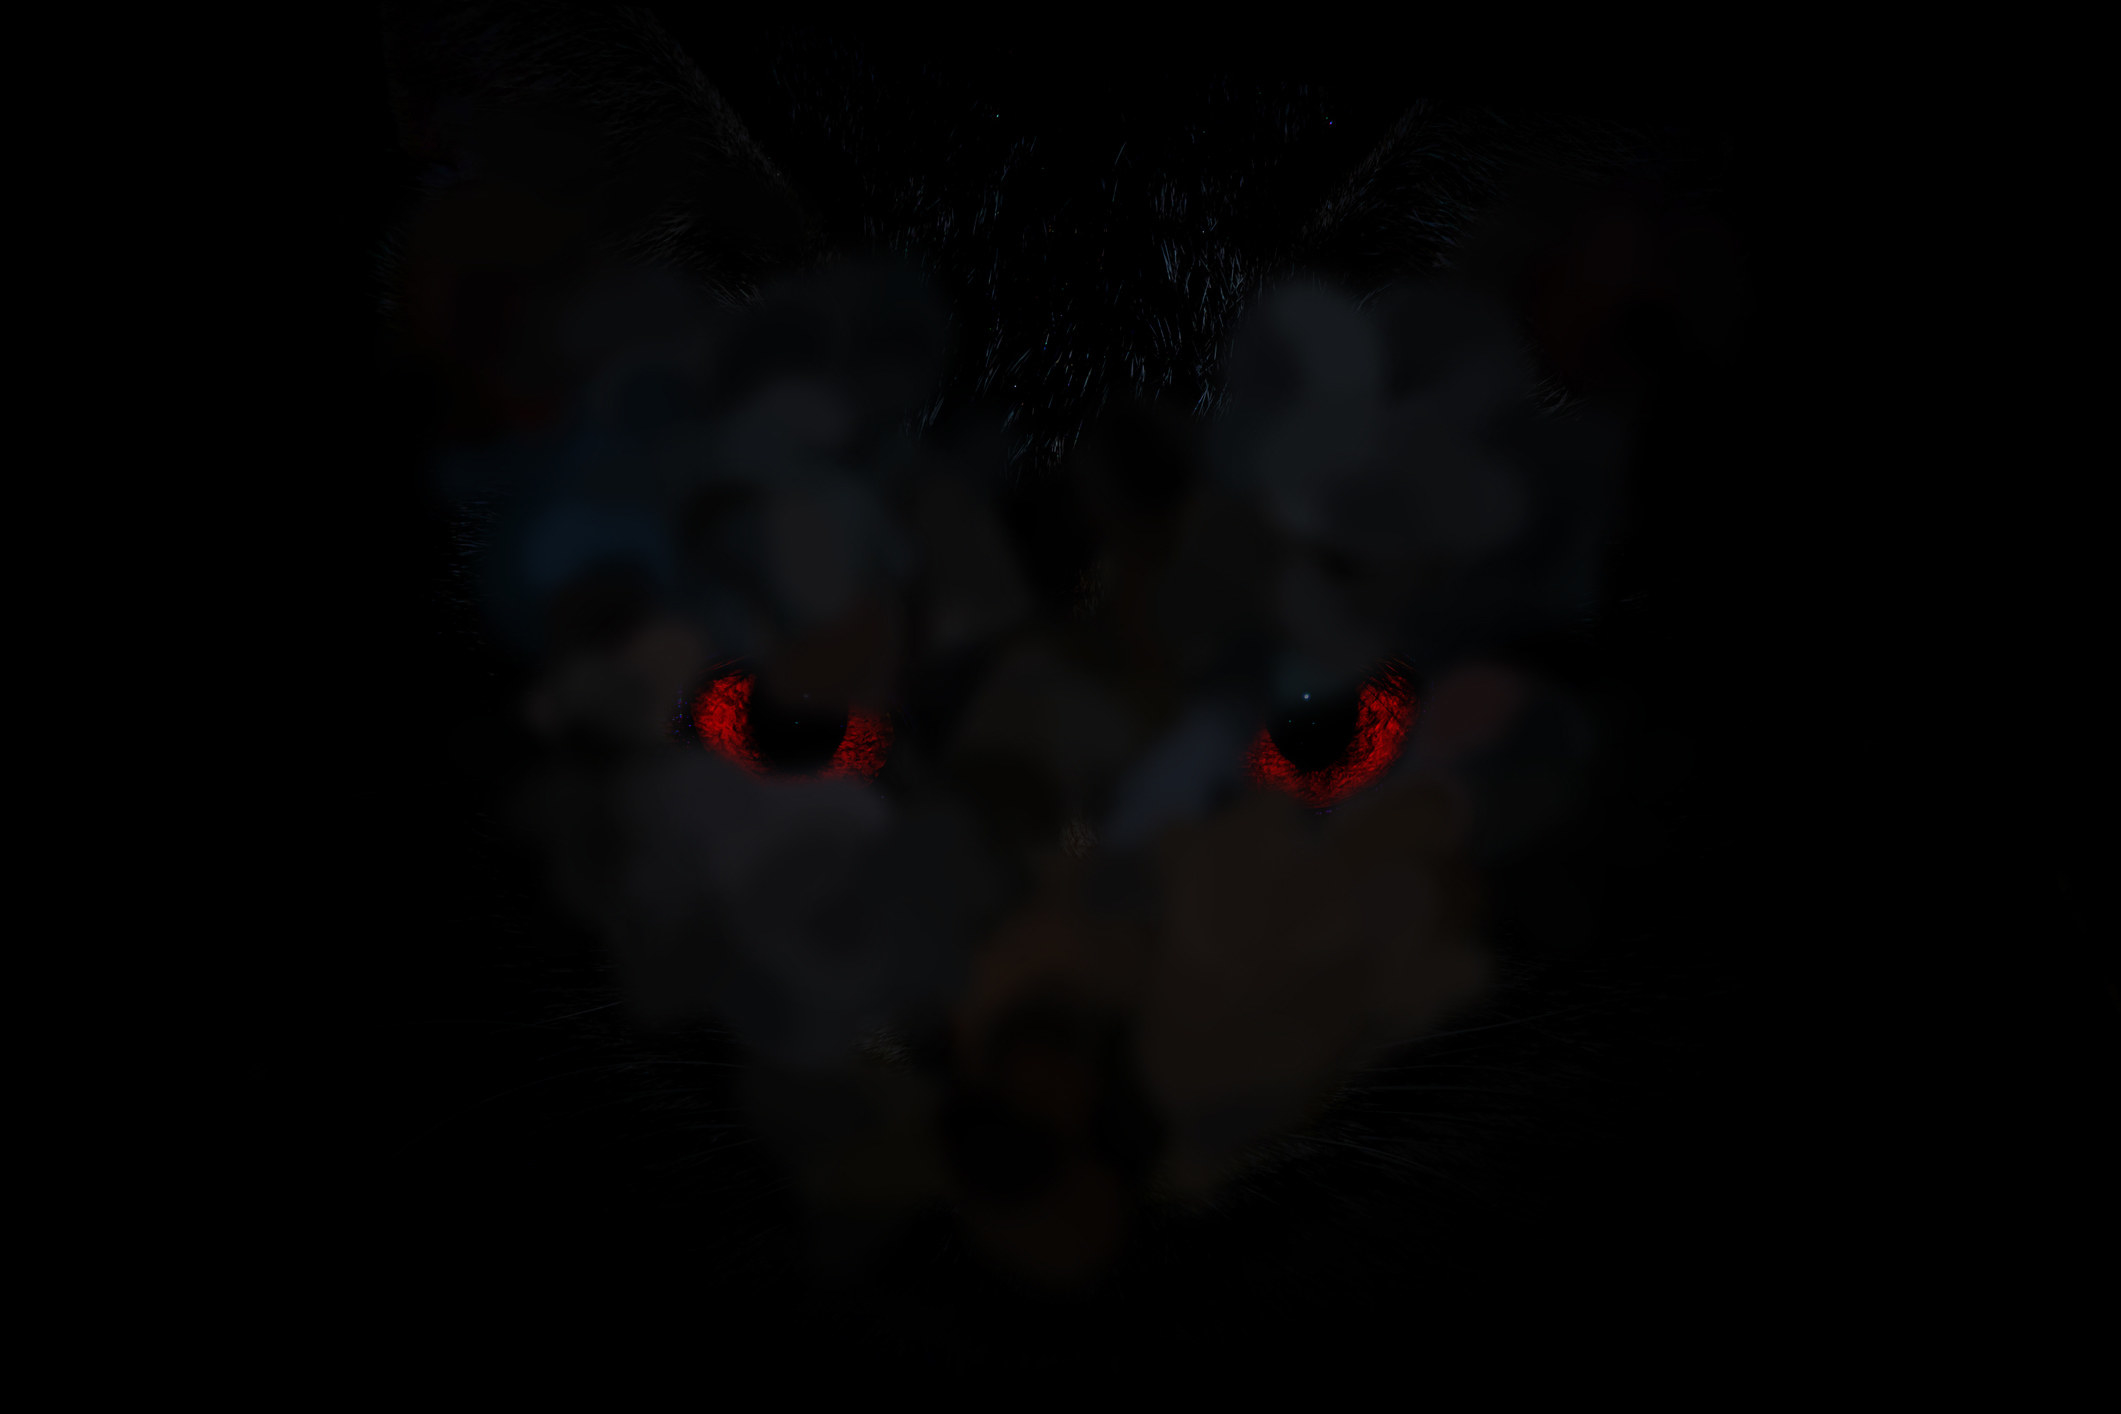 Red eyes in a dark black fog